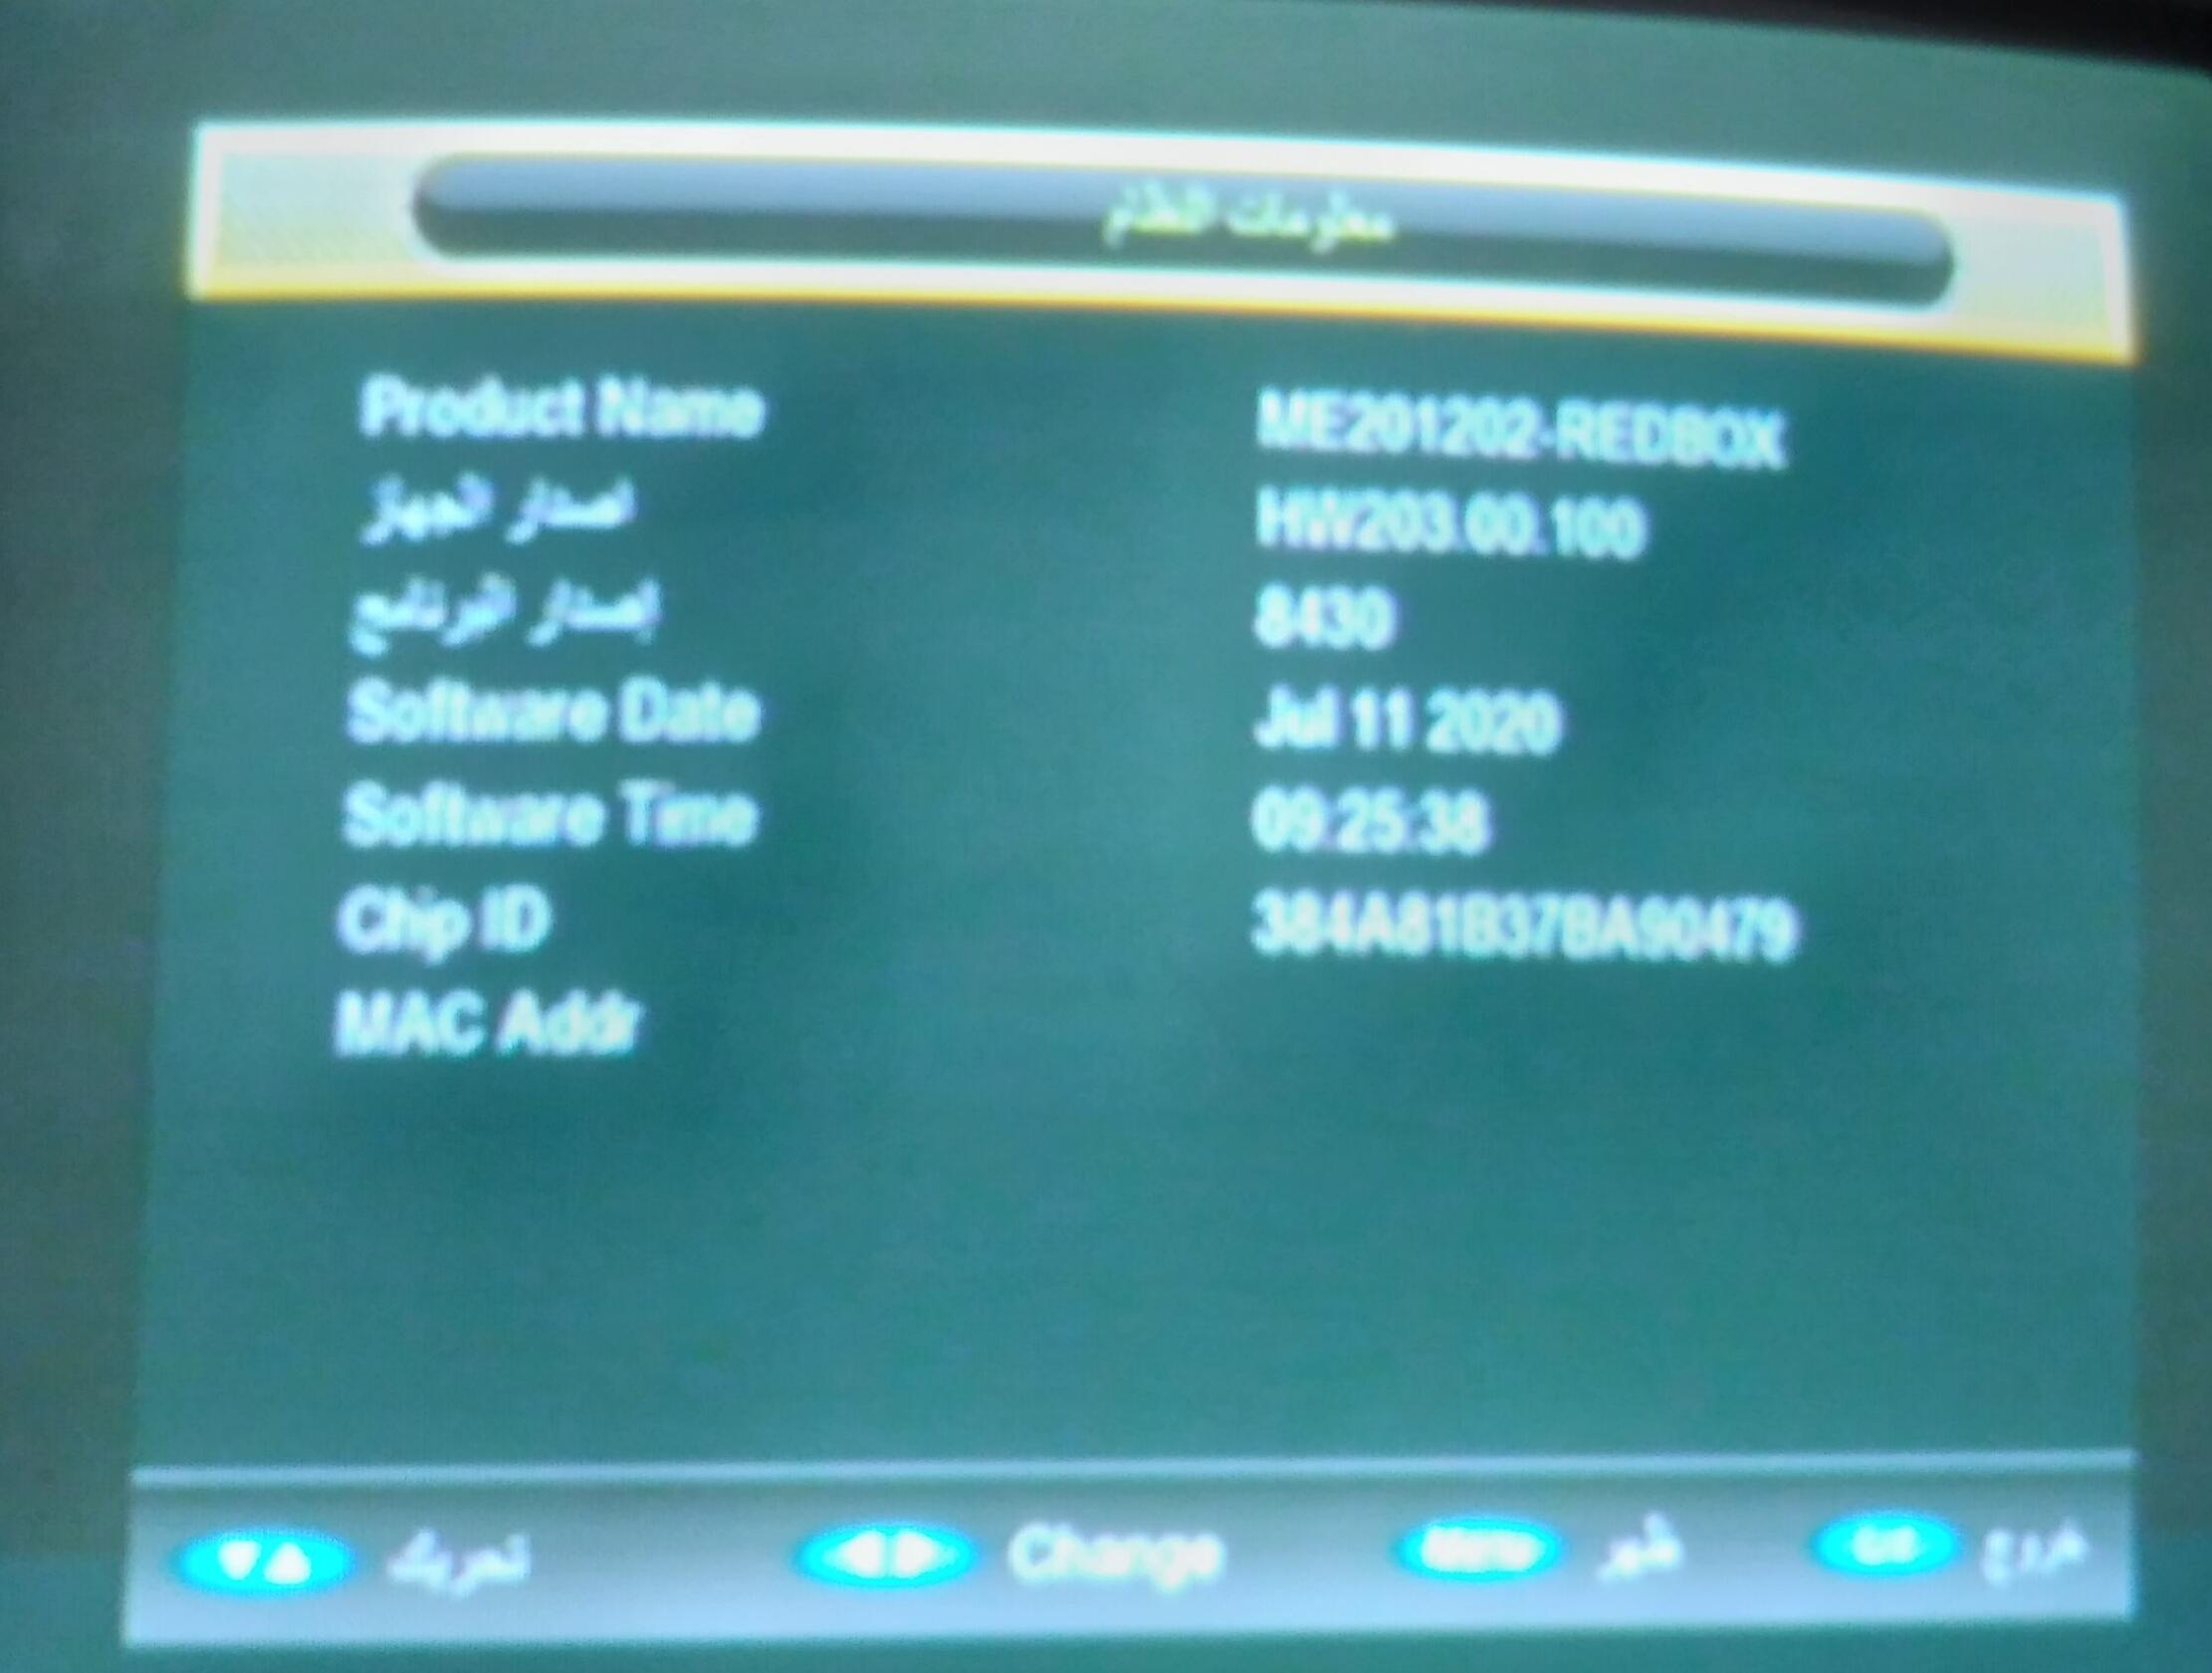 احدث ملف قنواتREDBOX RX-9000 HD MINI و royal 999 الاحمر المزود بـ 2 شاشة رقمية و CAMEX الاسود لشهر10 P_2484hbvt91